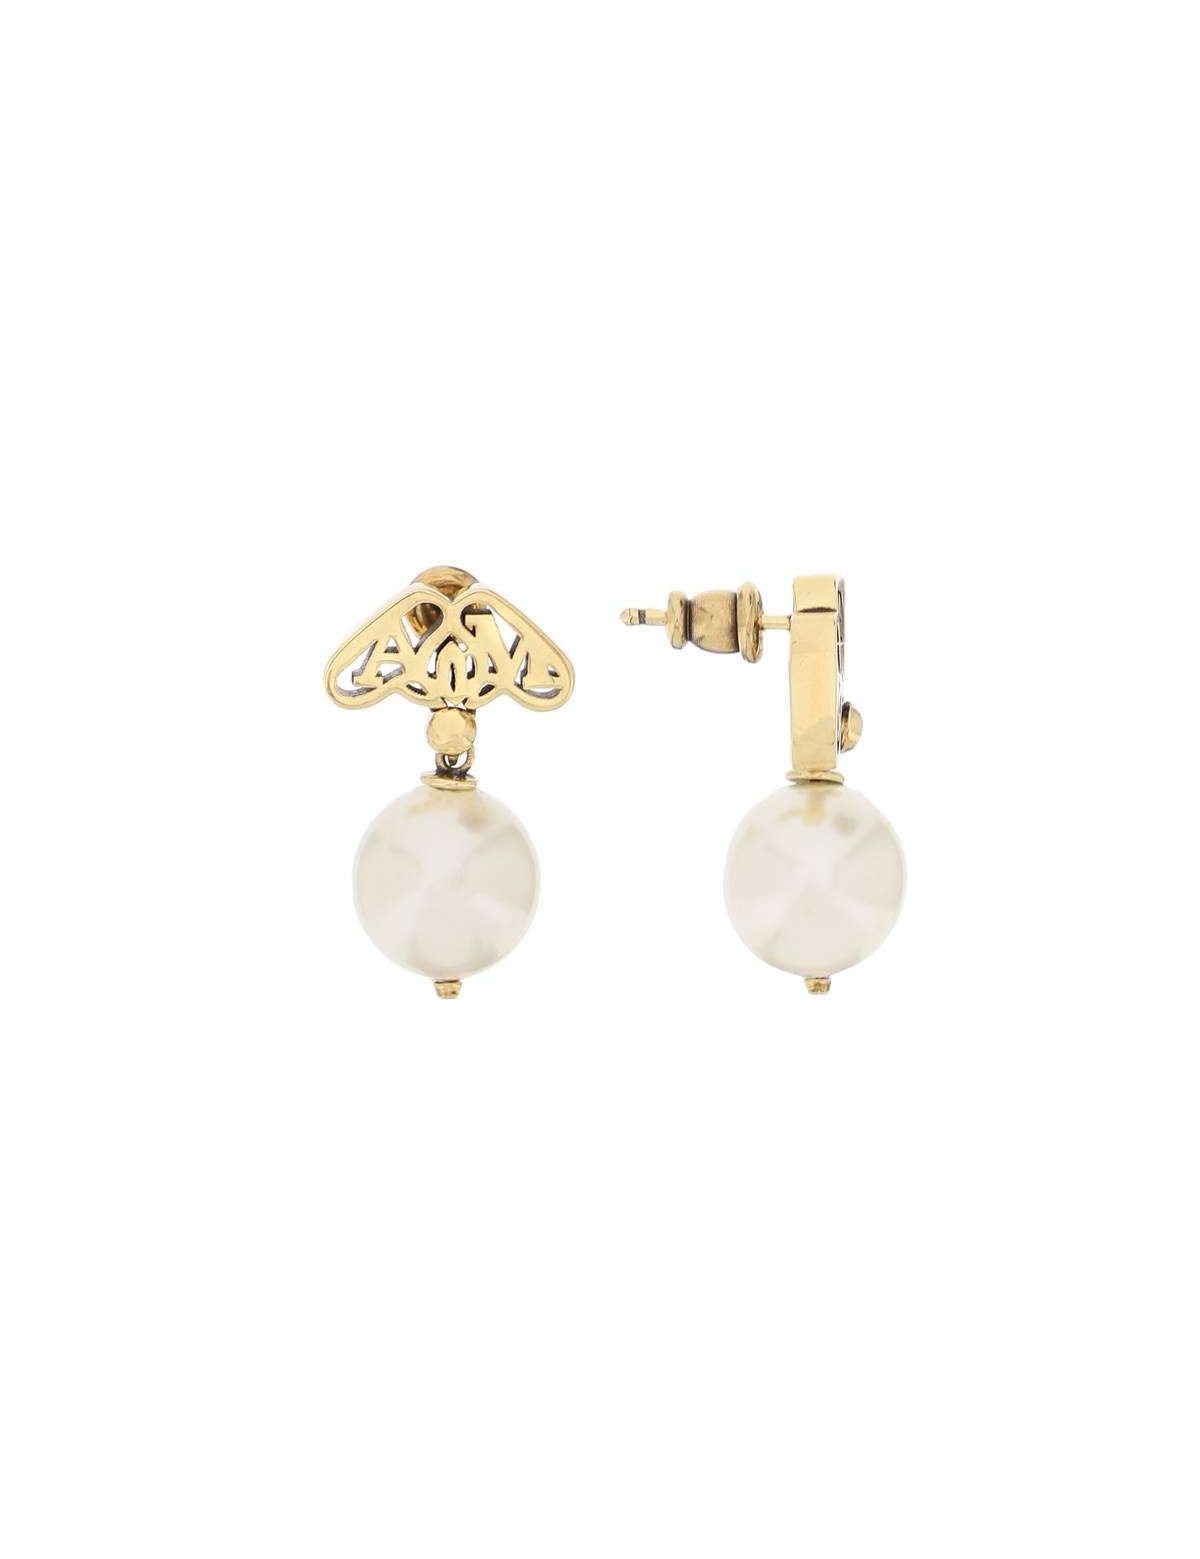 alexander-mcqueen-pearl-and-seal-earrings.jpg